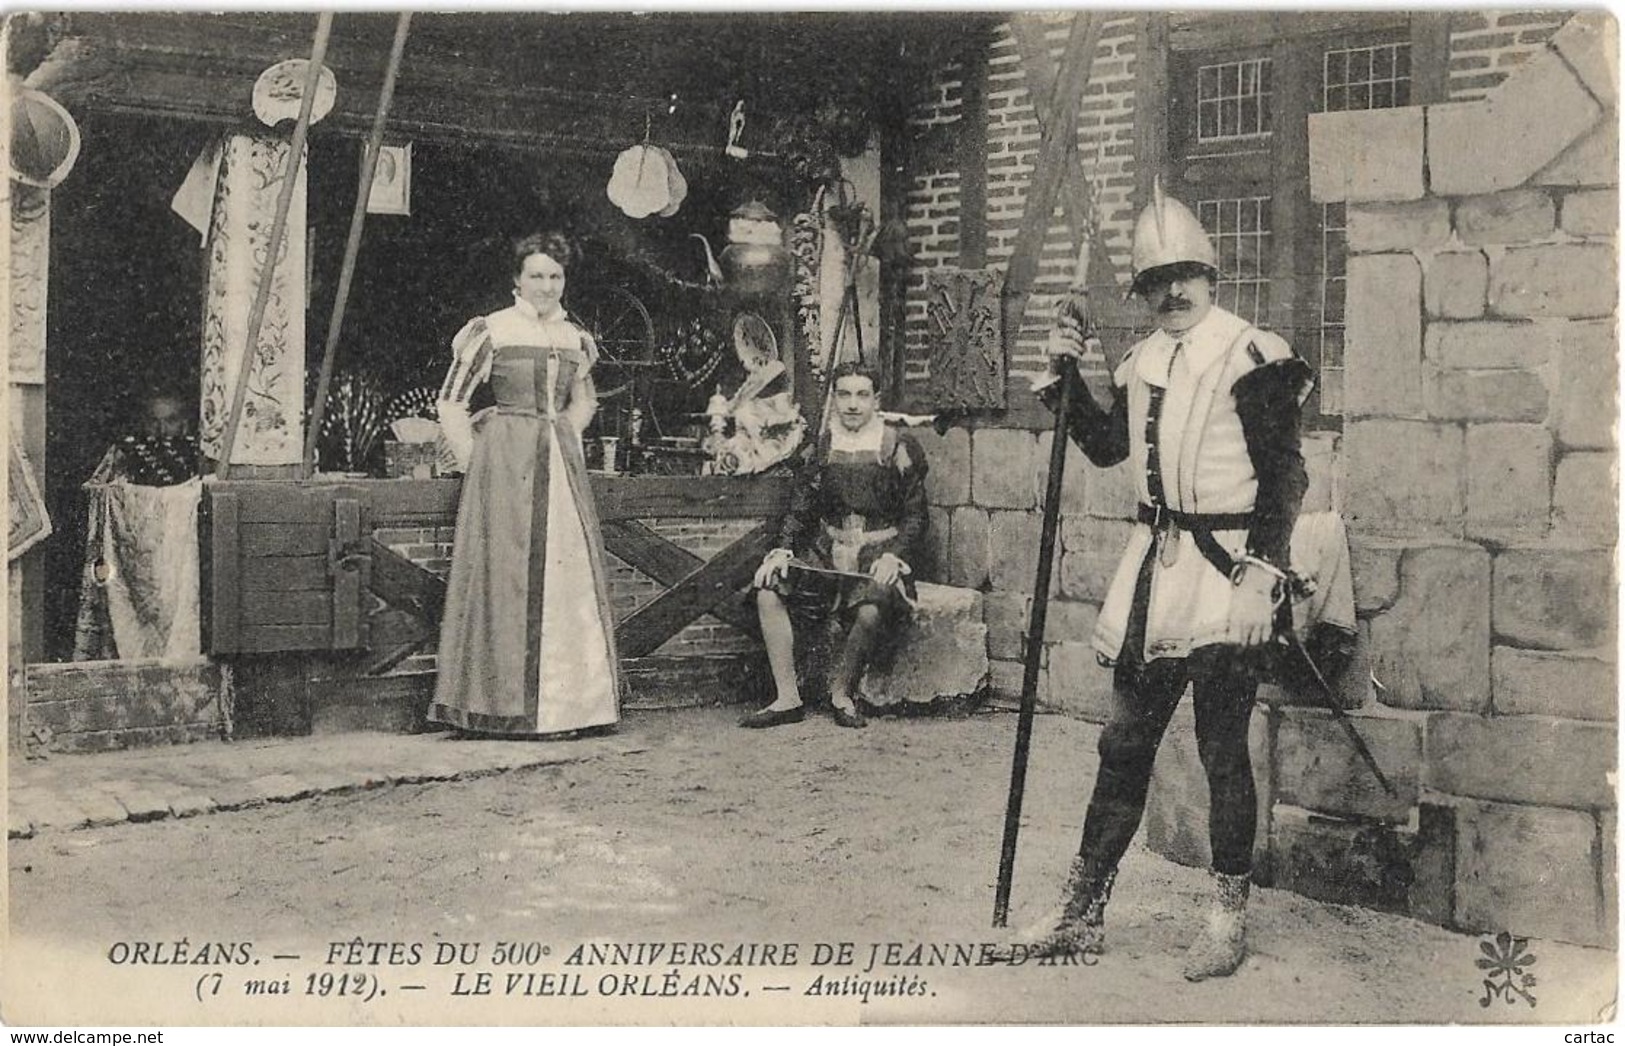 D45 - ORLEANS - FÊTES DU 500e ANNIVERSAIRE JEANNE D'ARC-LE VIEIL ORLEANS-ANTIQUITES -7 MAI 1912 - Orleans